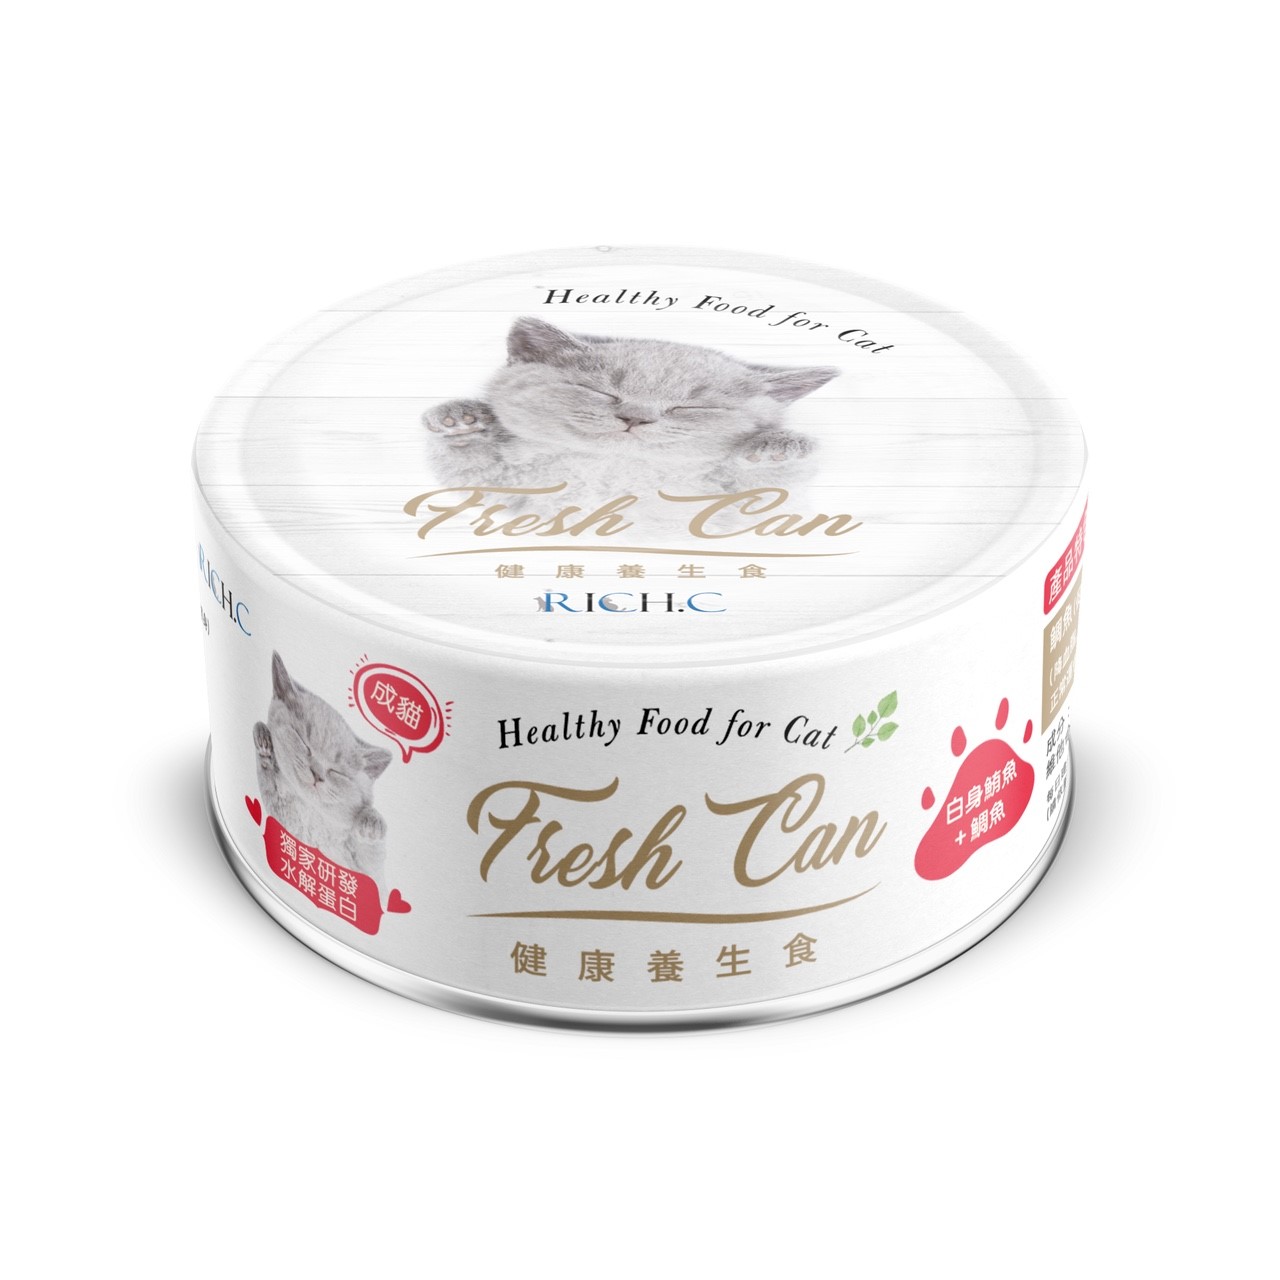 瑞奇健康養生食-白身鮪魚+雕魚
Rich Fresh Can